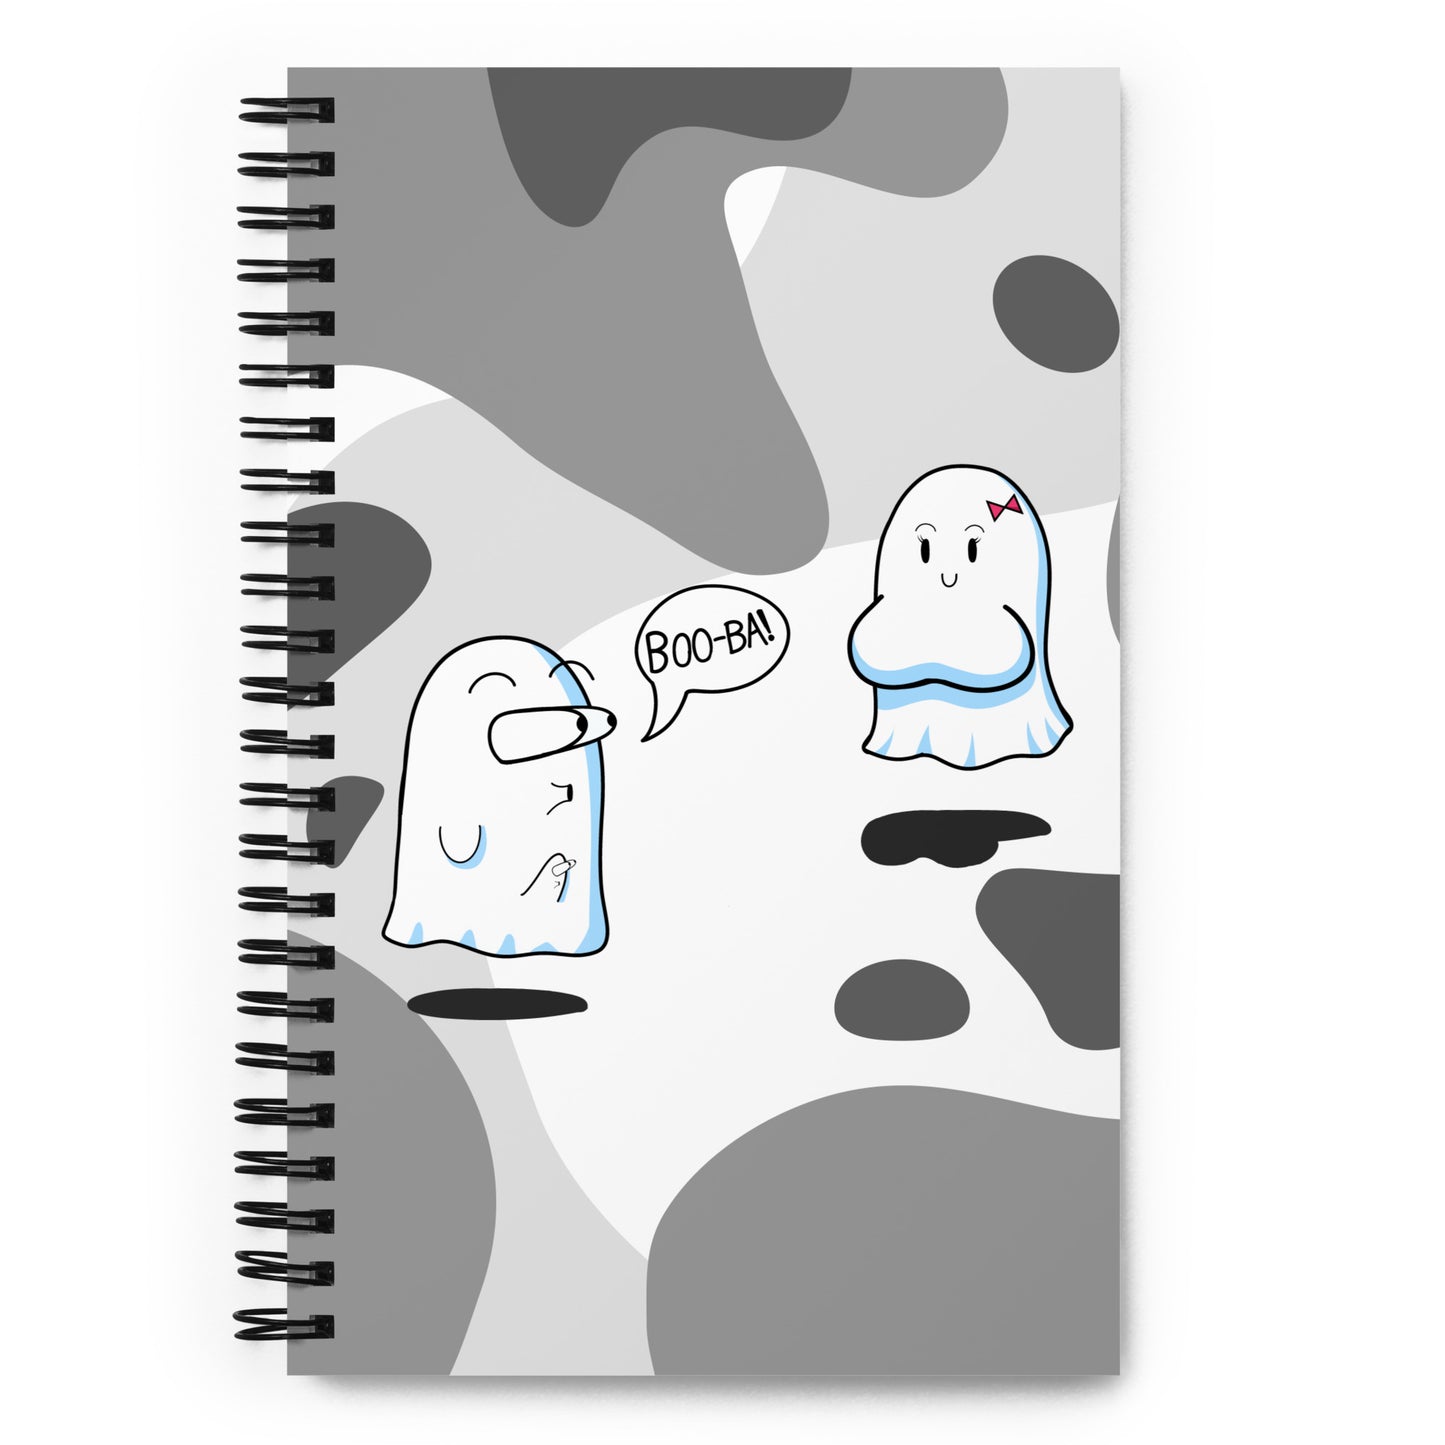 Boo Ba! Spiral notebook